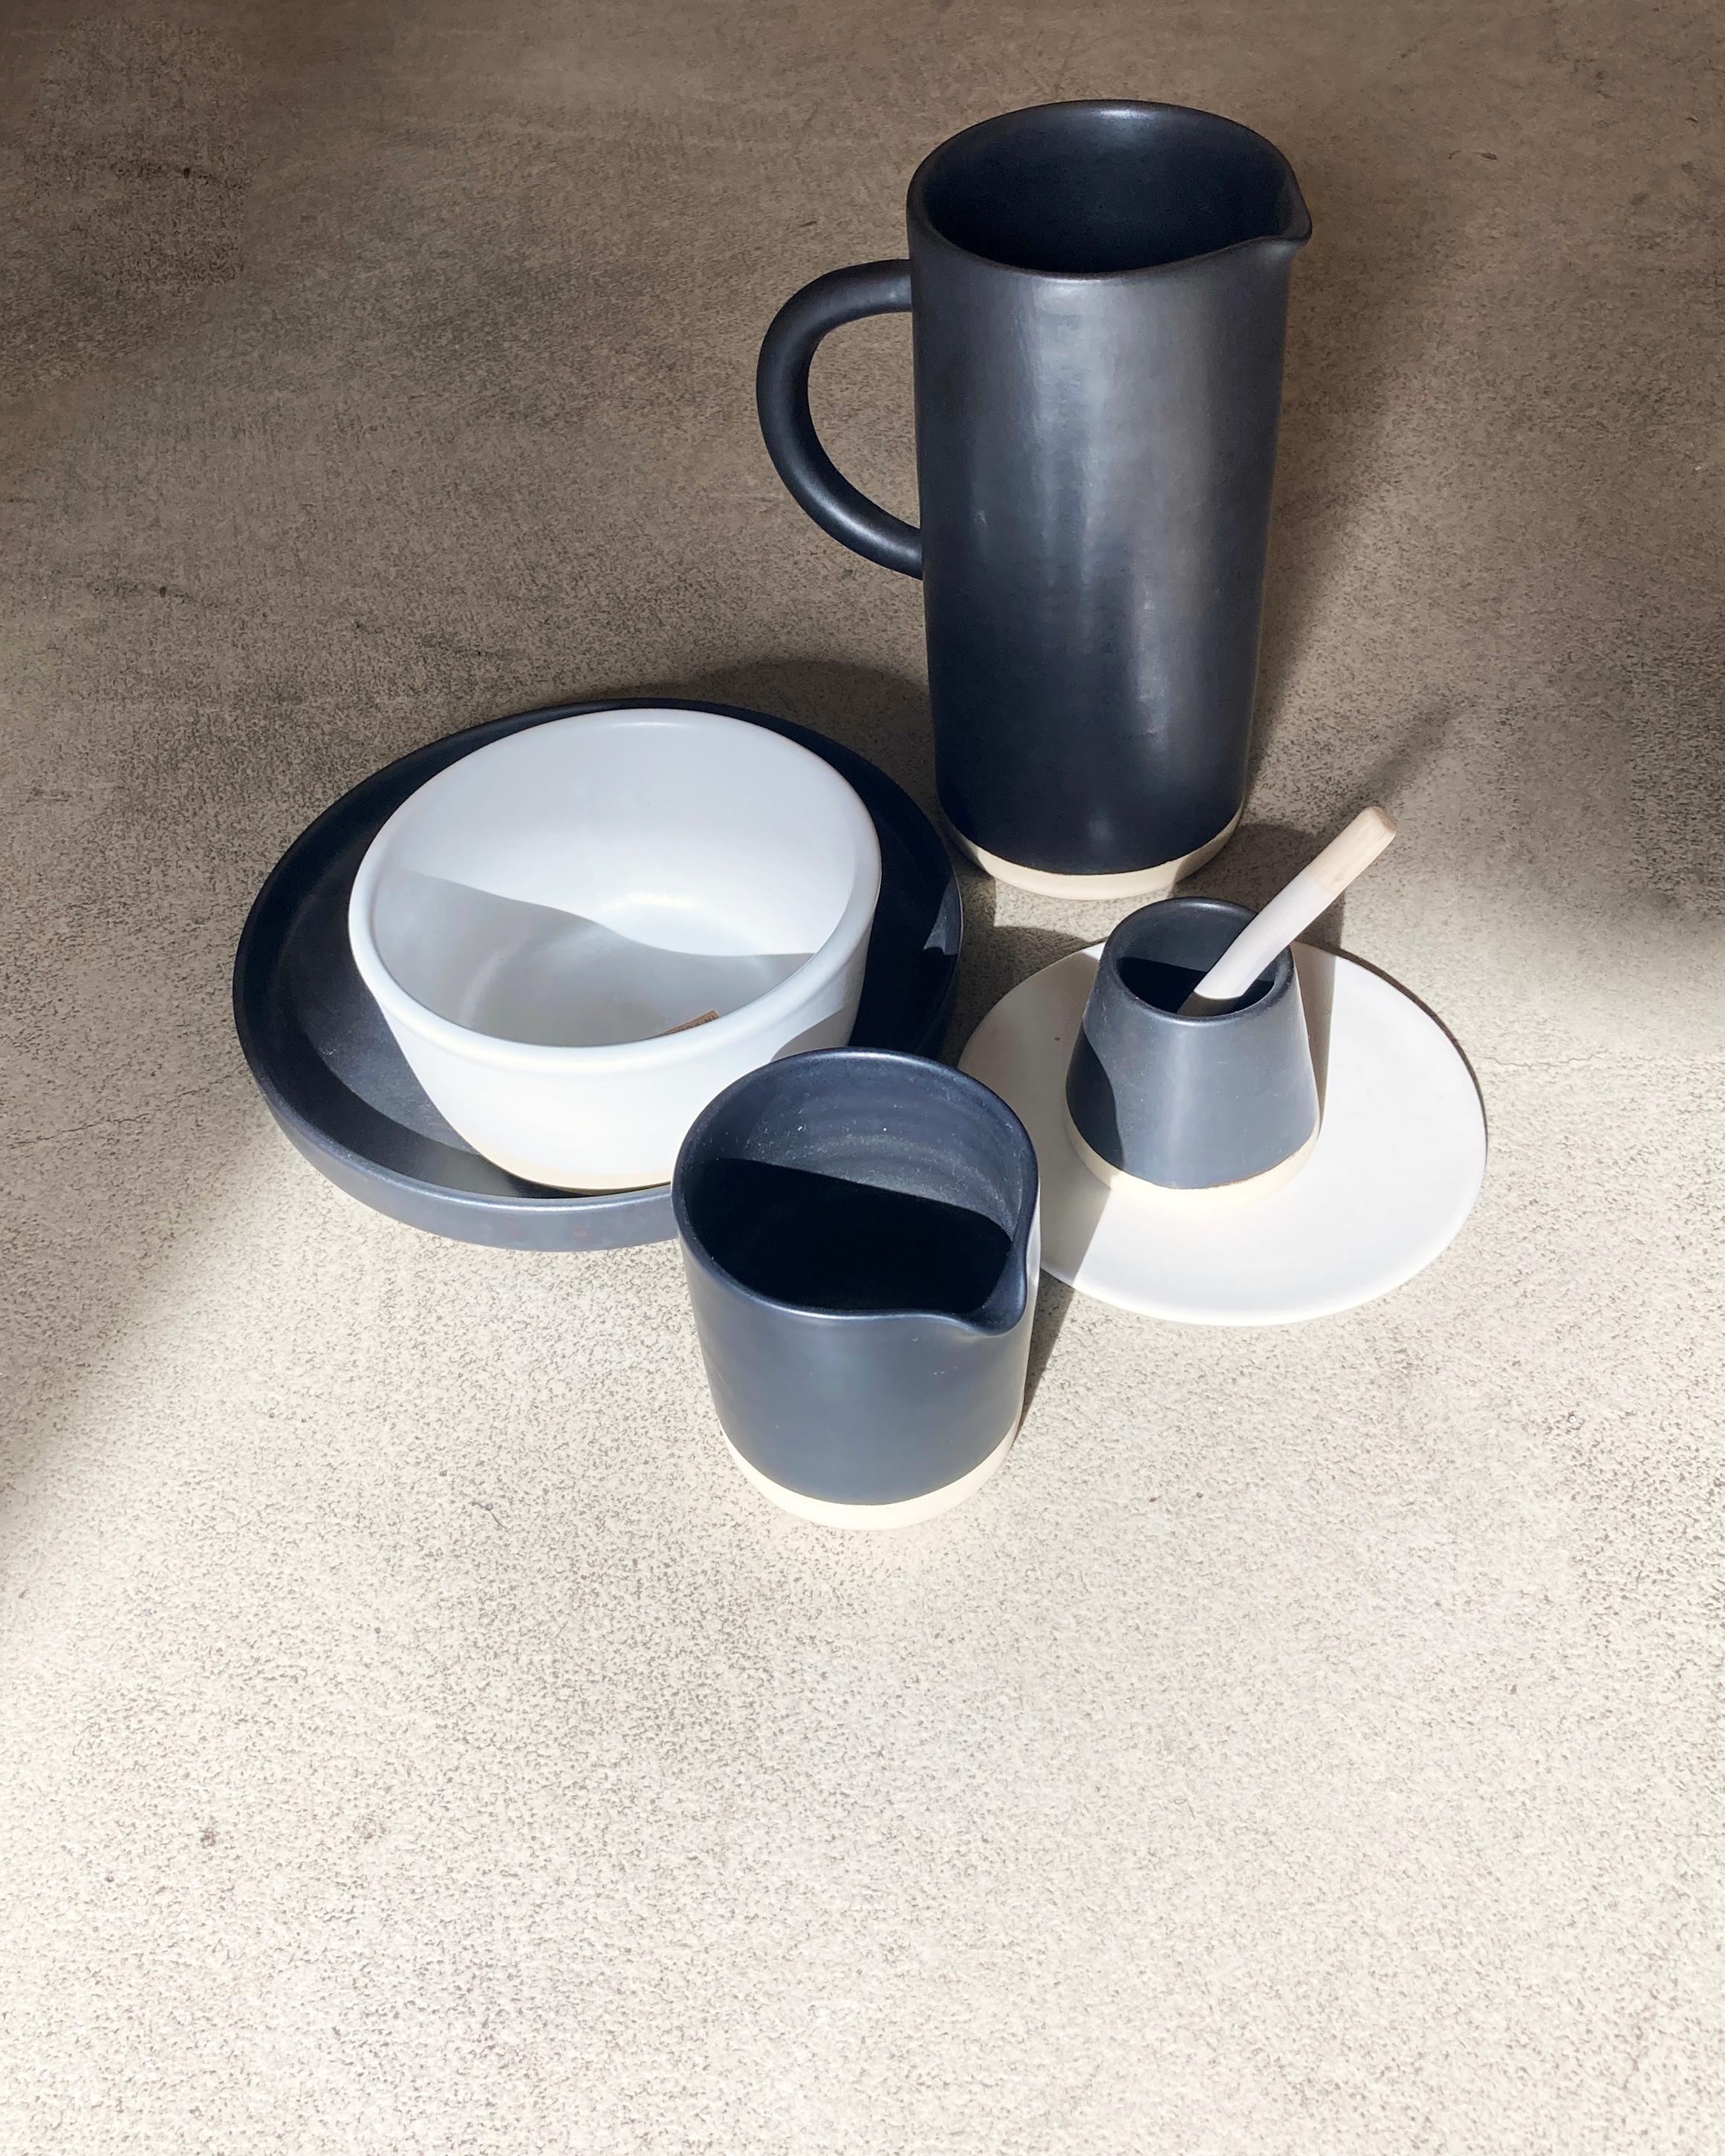 Diese handgefertigten und handbemalten Keramiken aus einem der Mutterländer, Portugal, verleihen Ihrem Tisch einen modernen Touch und sind perfekt zu kombinieren. Diese Tasse ist in schwarz oder weiß erhältlich.

Größe: 3 